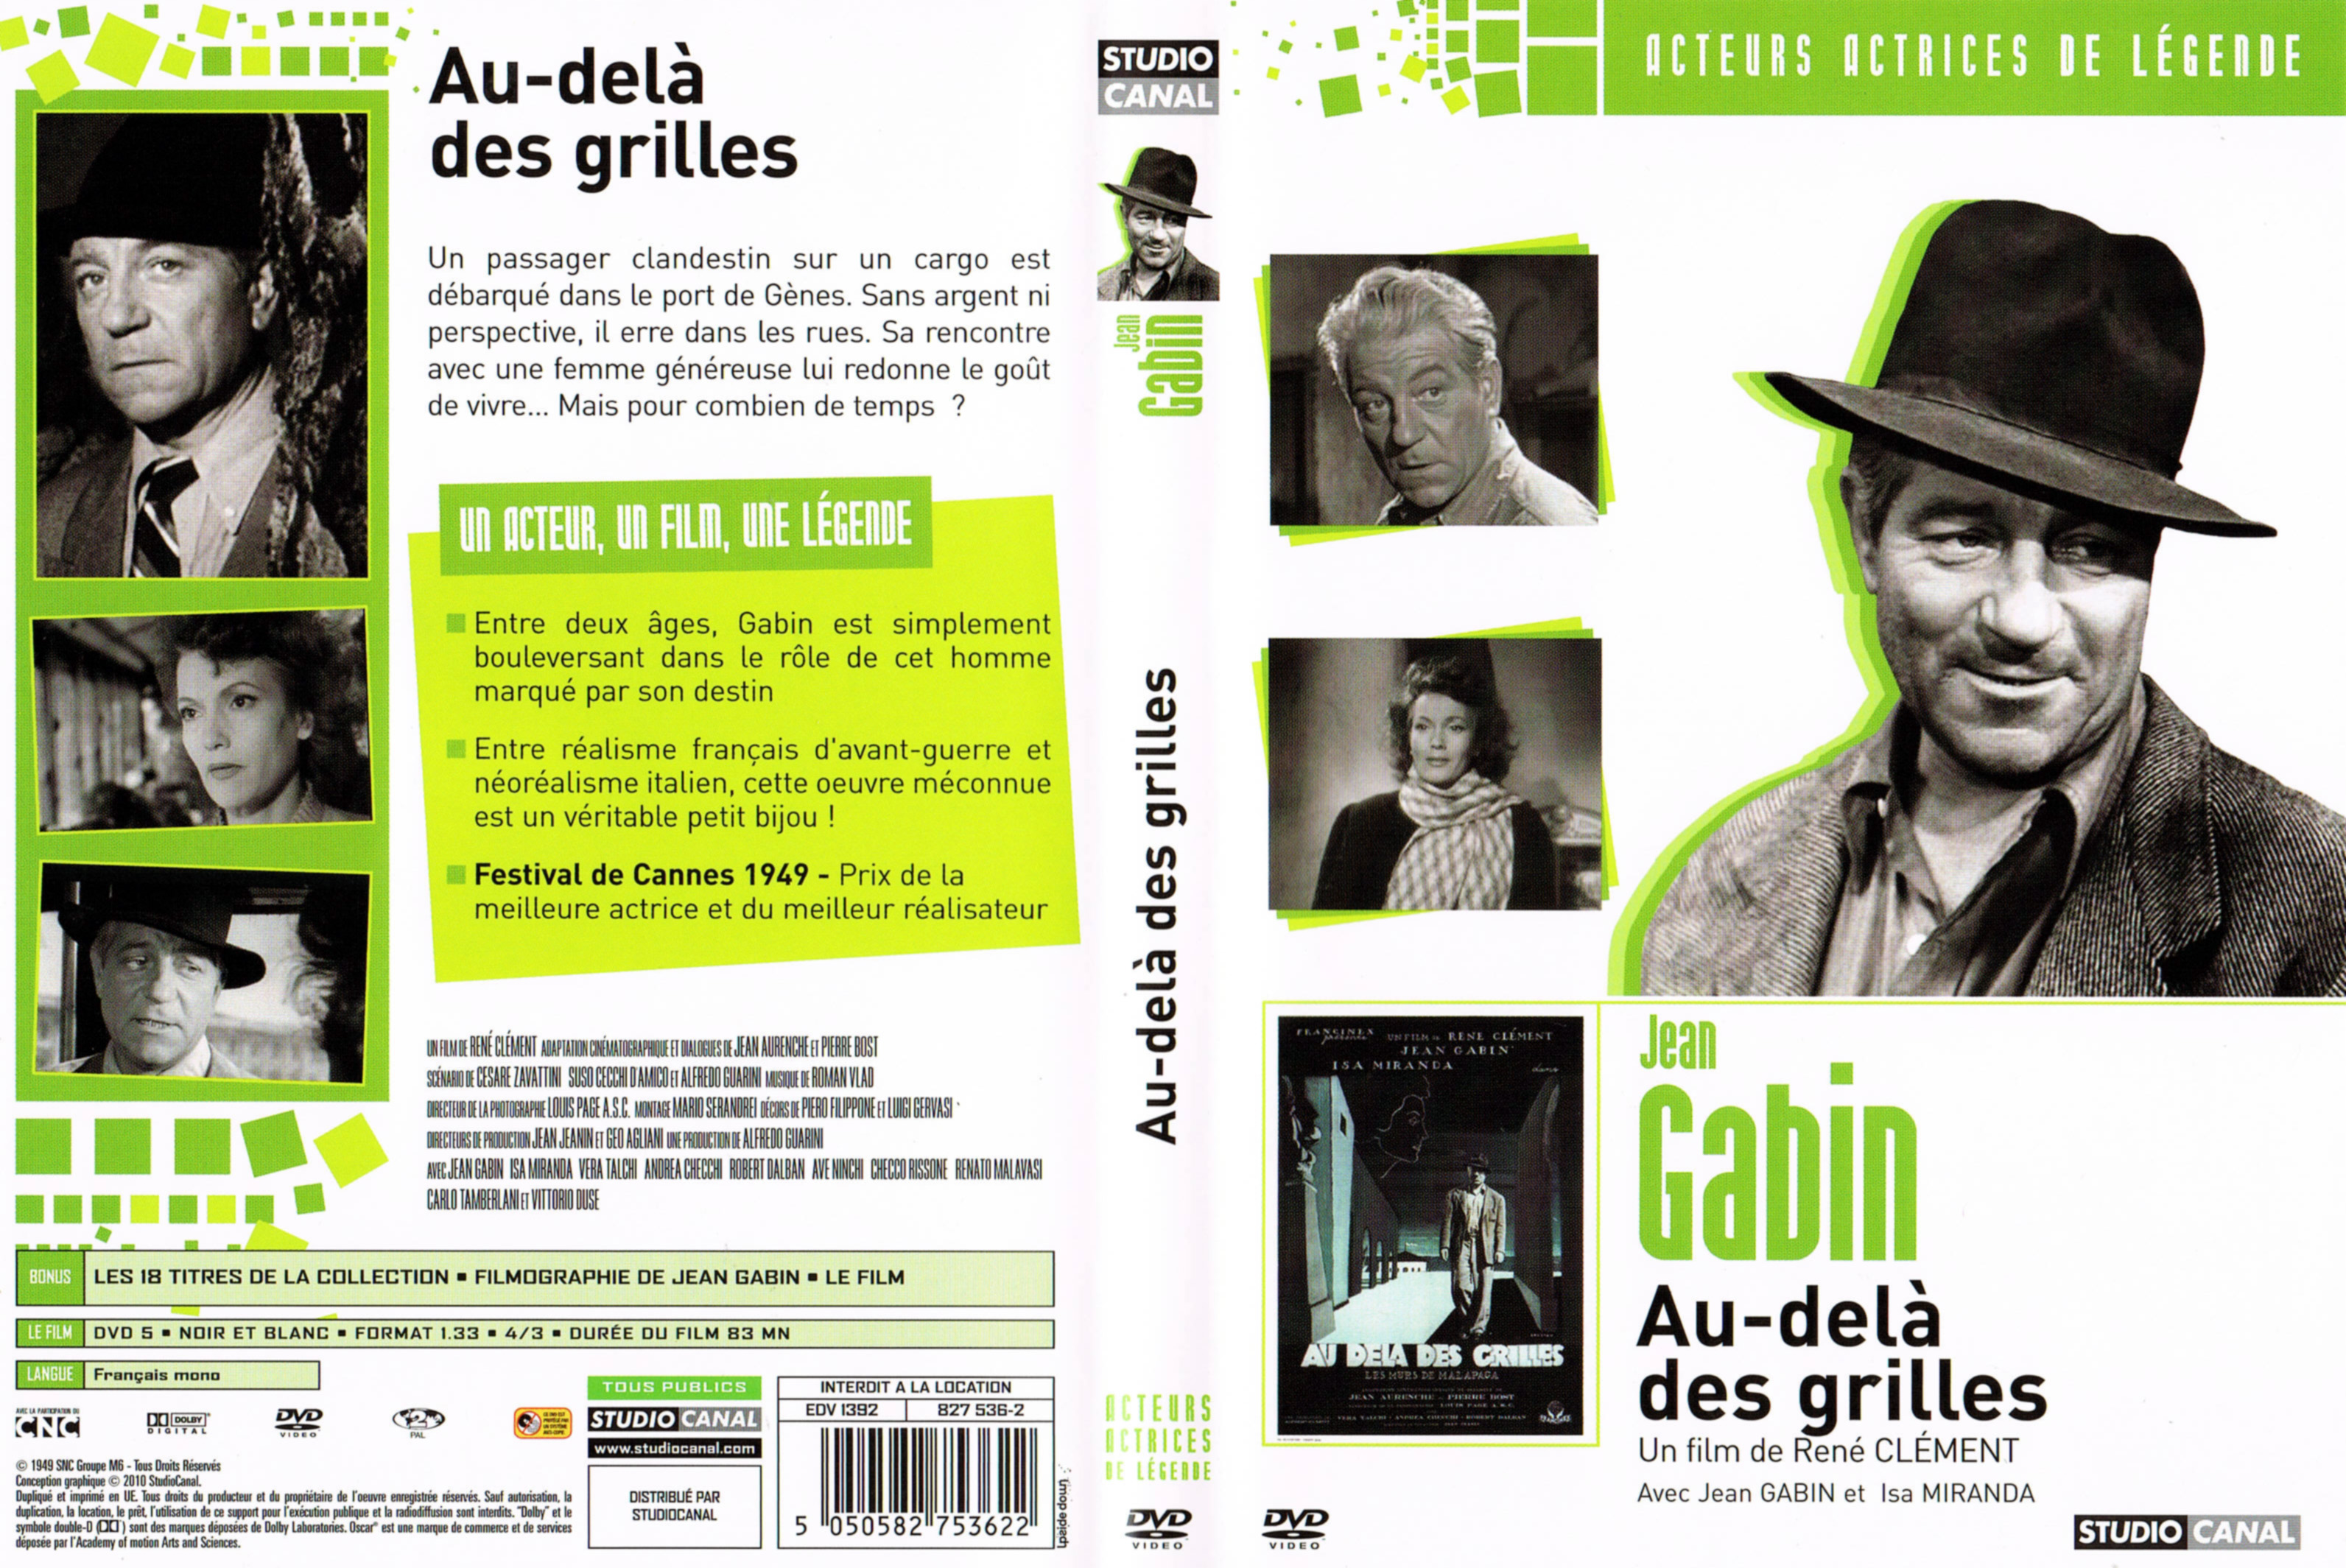 Jaquette DVD Au-del des grilles v3